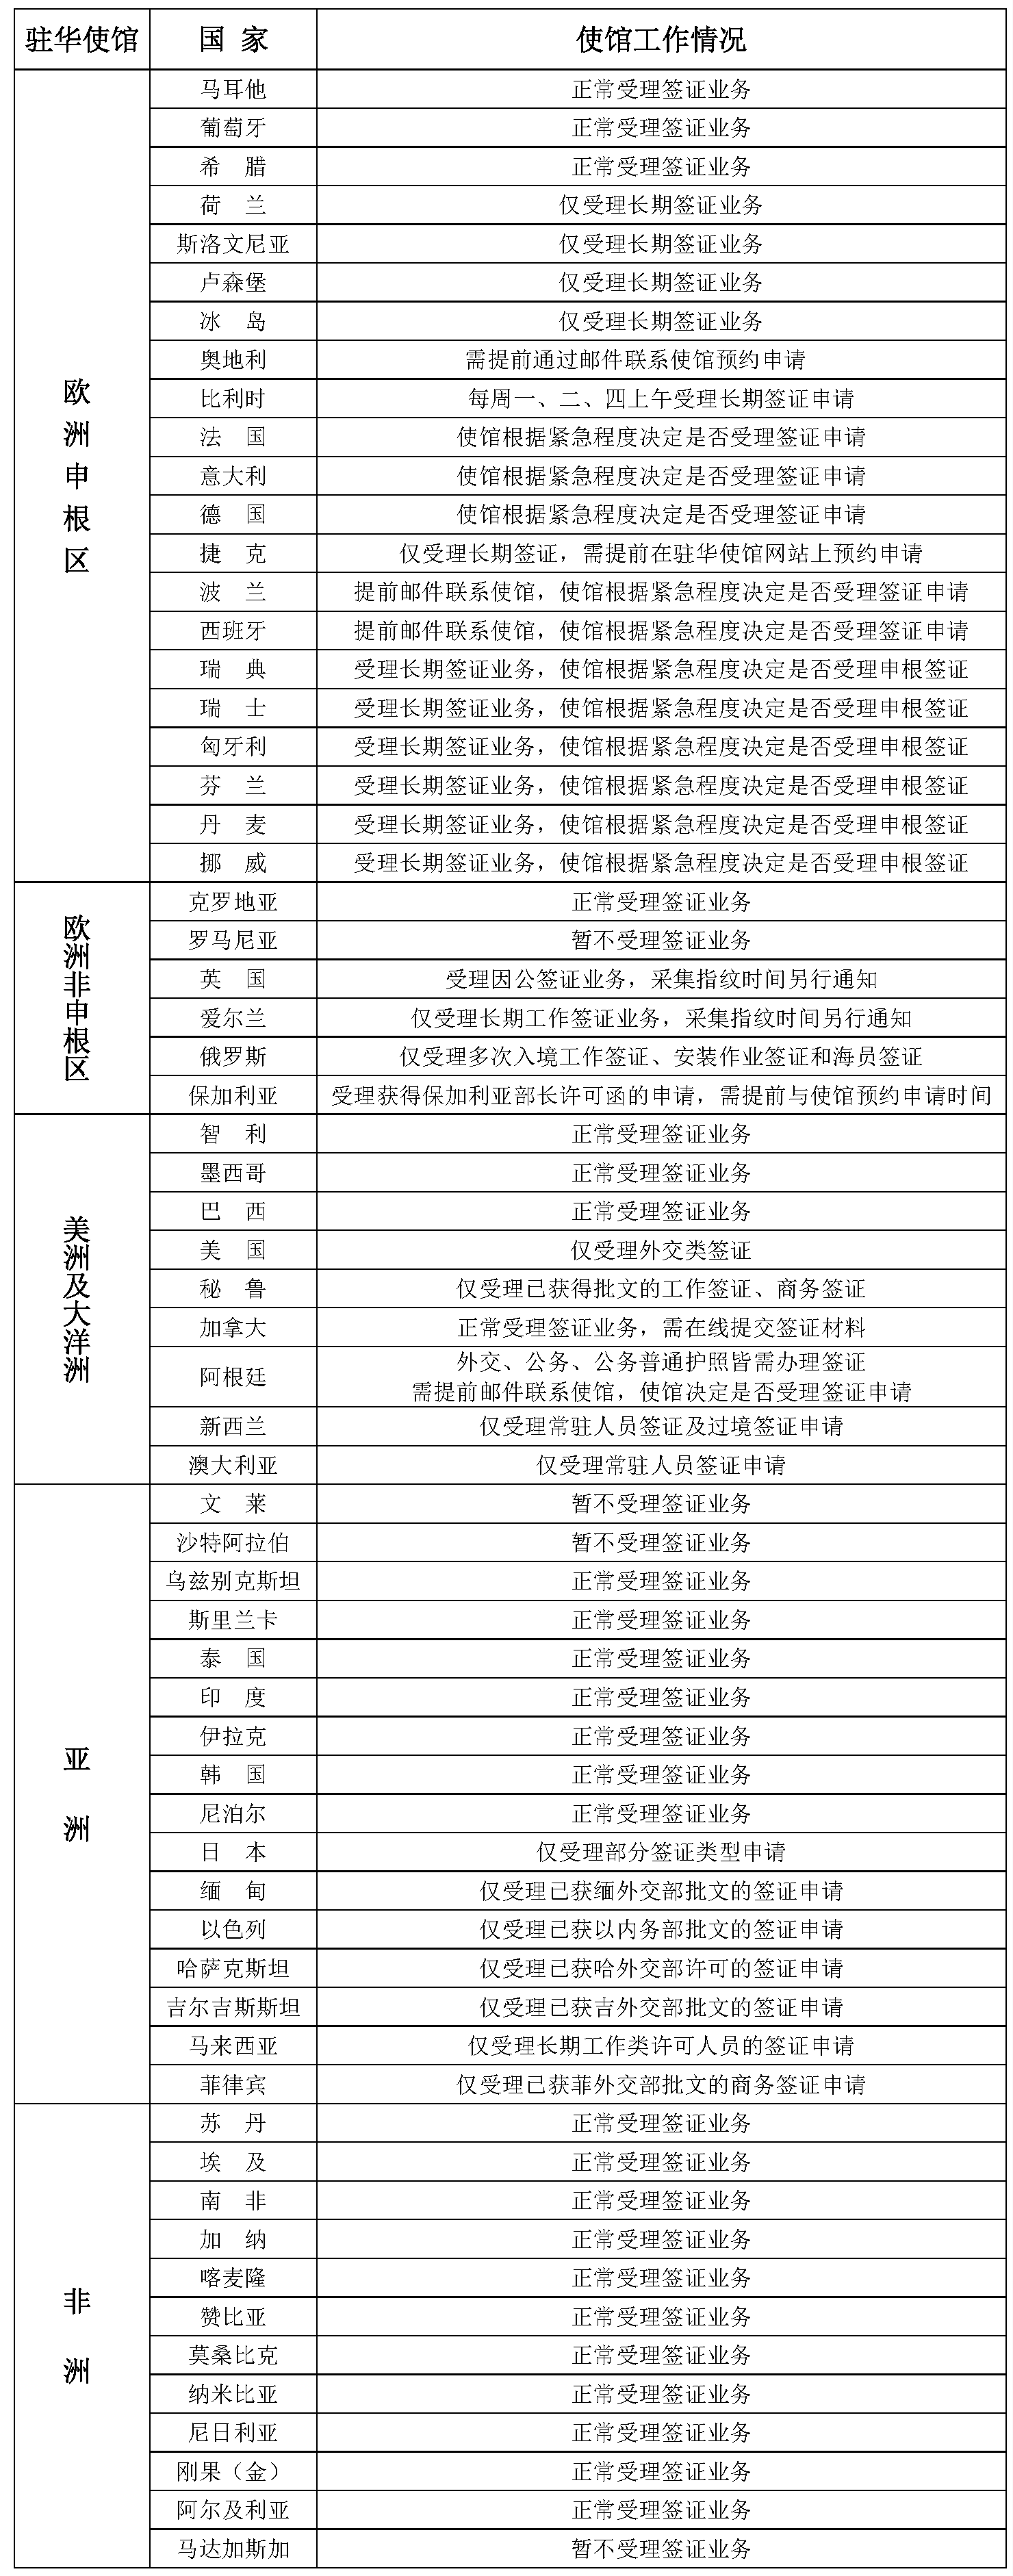 2021年5月24日部分驻华使馆工作情况统计表(1)(1).png